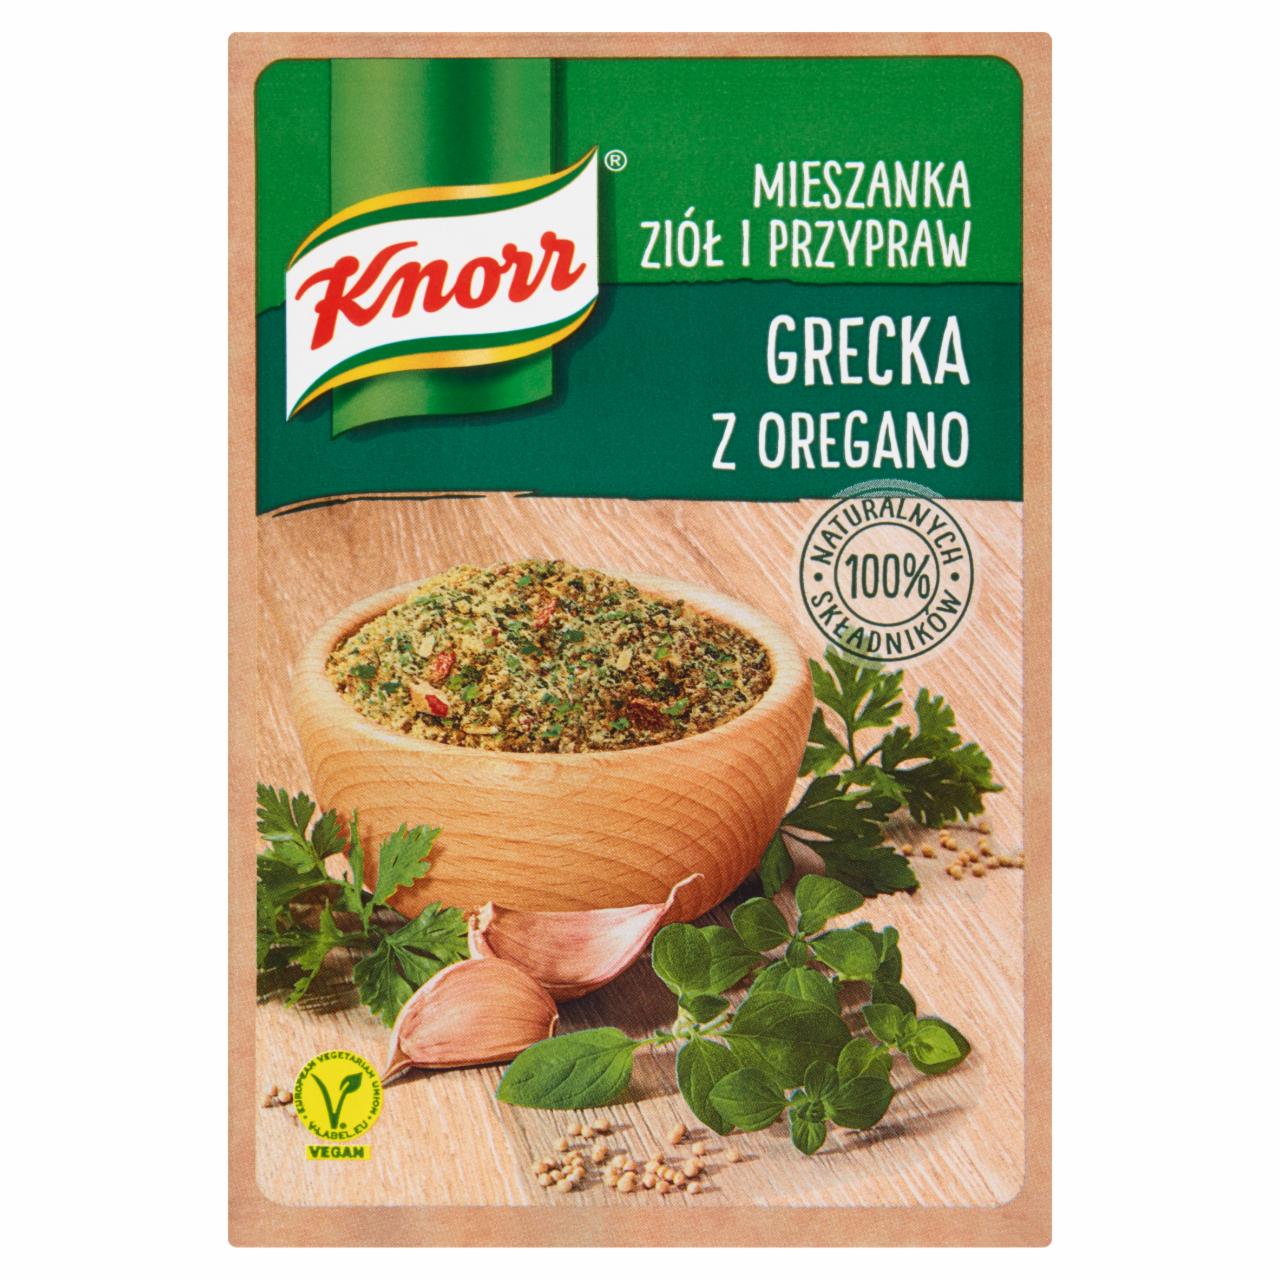 Zdjęcia - Knorr Mieszanka ziół i przypraw grecka z oregano 13,5 g